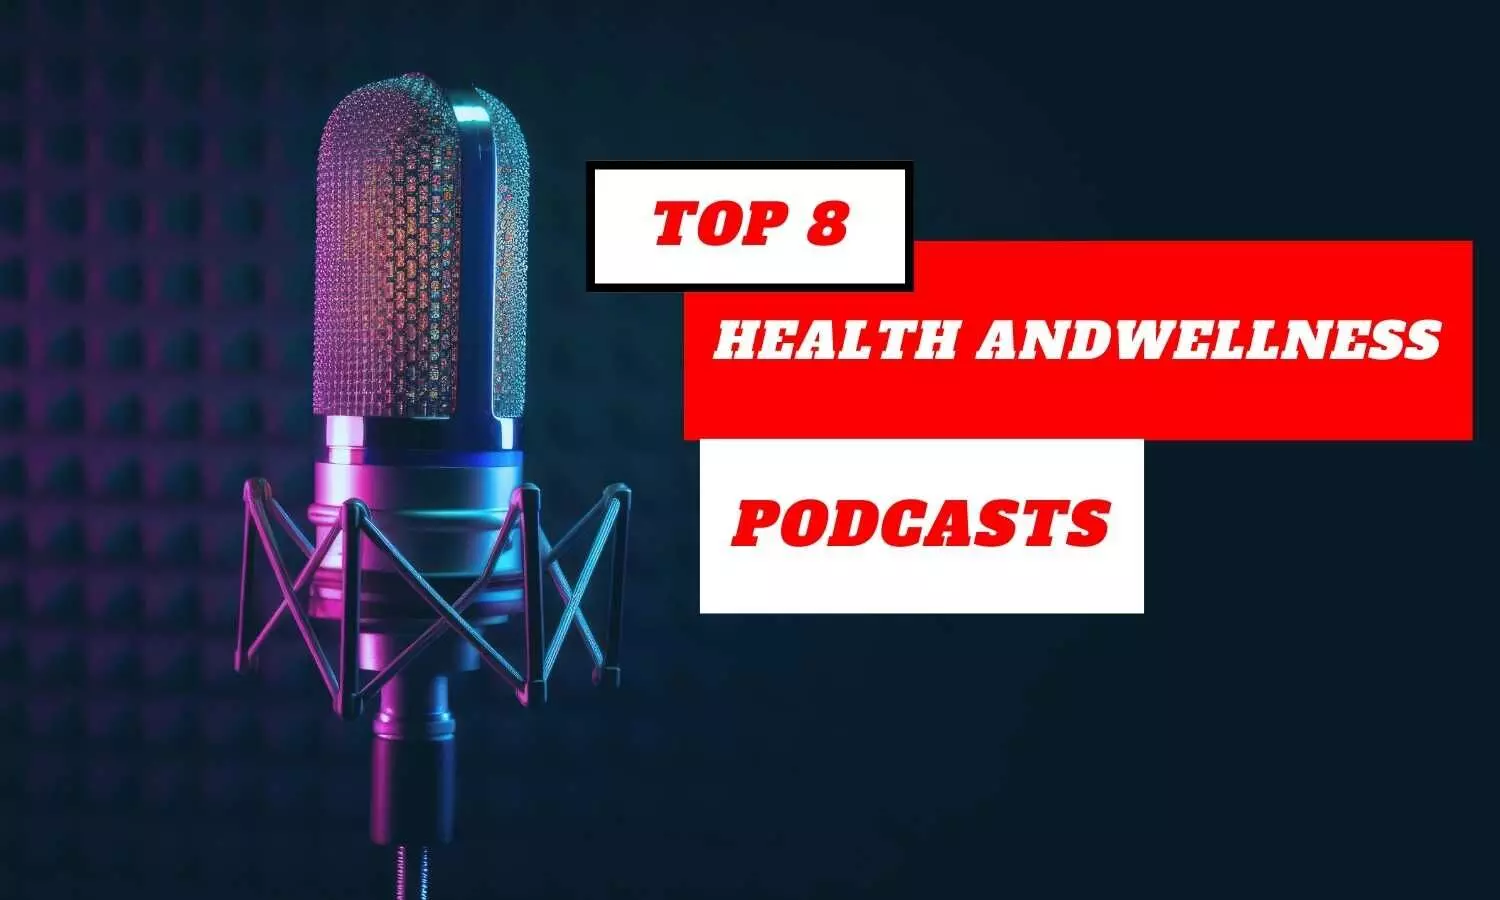 Découvrez les 8 meilleurs podcasts sur la santé et le bien-être pour connaître les dernières nouveautés en matière de nutrition, de remise en forme et de bien-être mental